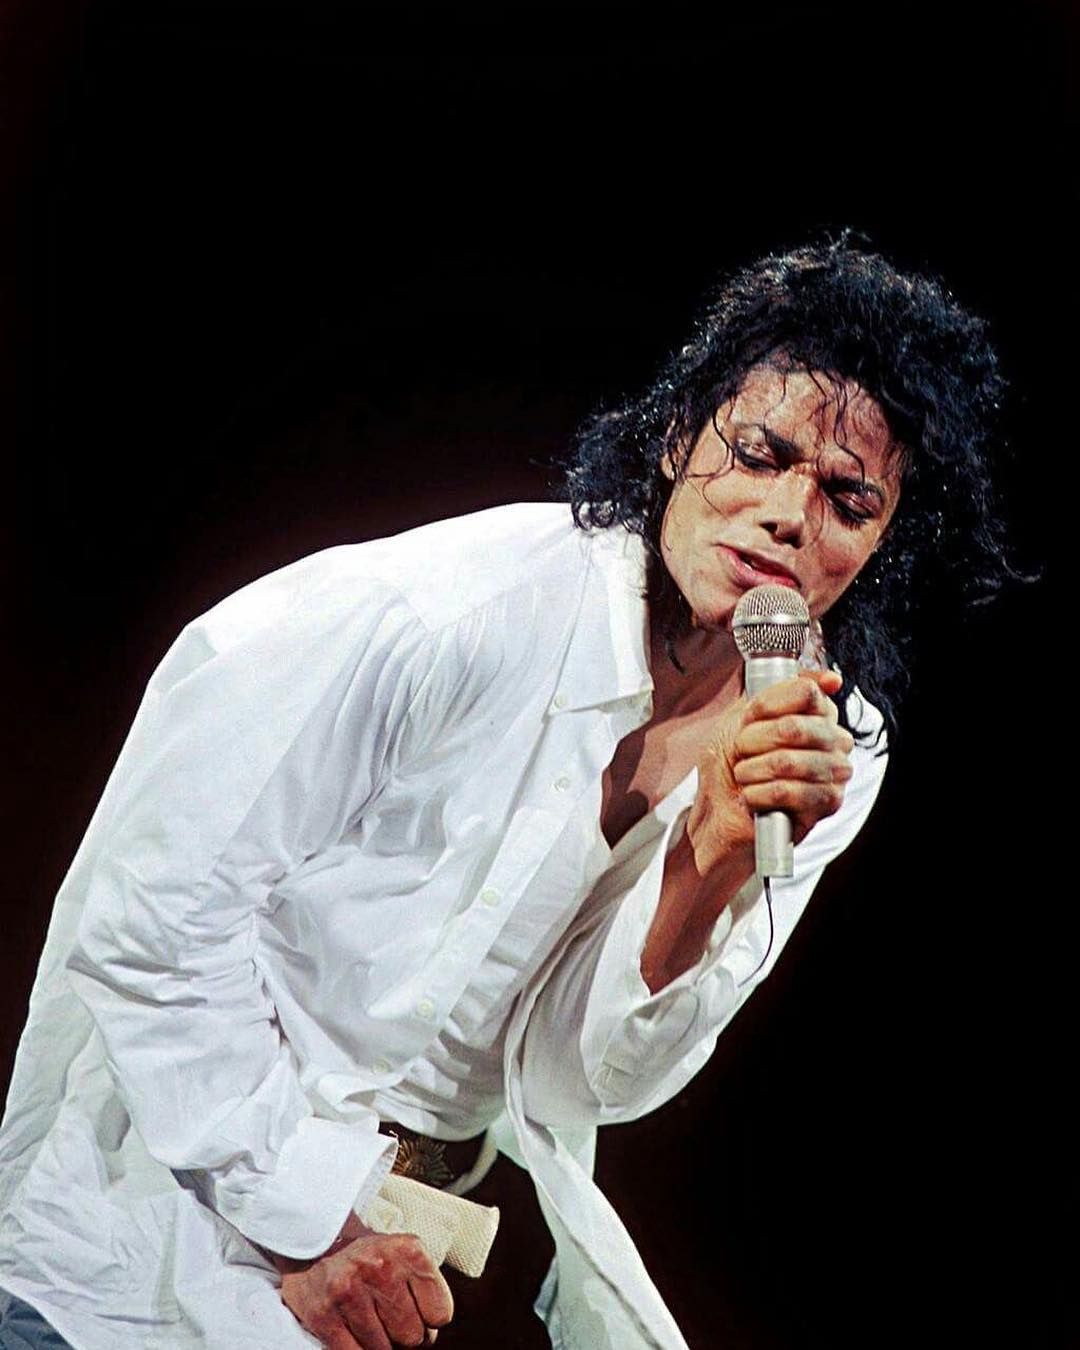 Naozaj Michael Jackson sexuálne zneužíval deti? Pozreli sme sa na jeho život